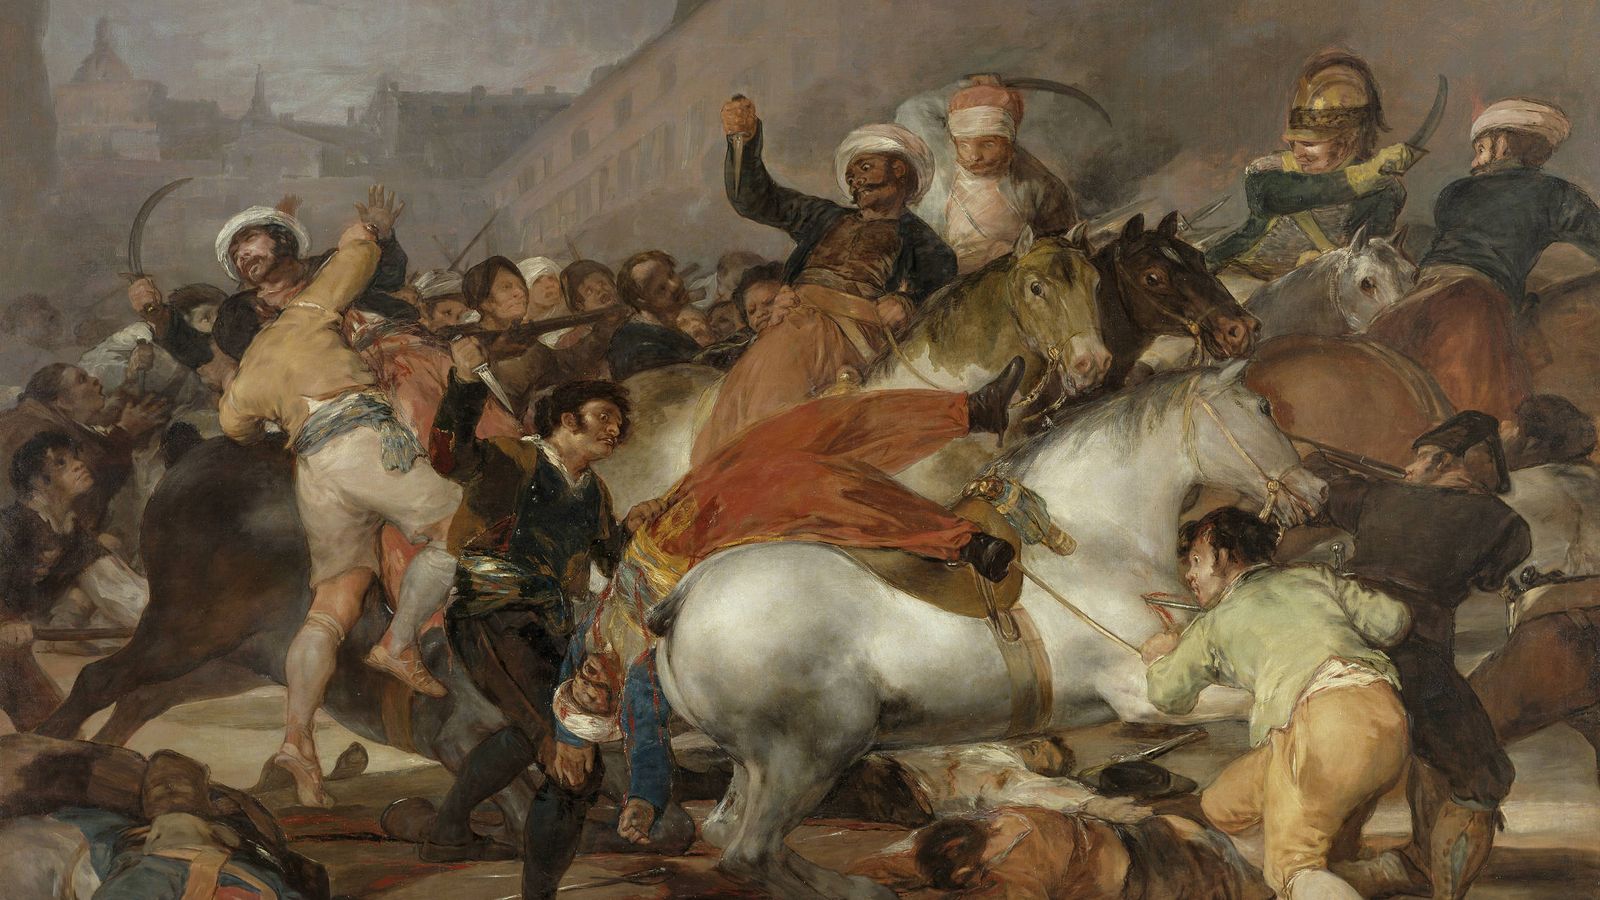 Foto: 'La carga de los mamelucos'. (Francisco de Goya)